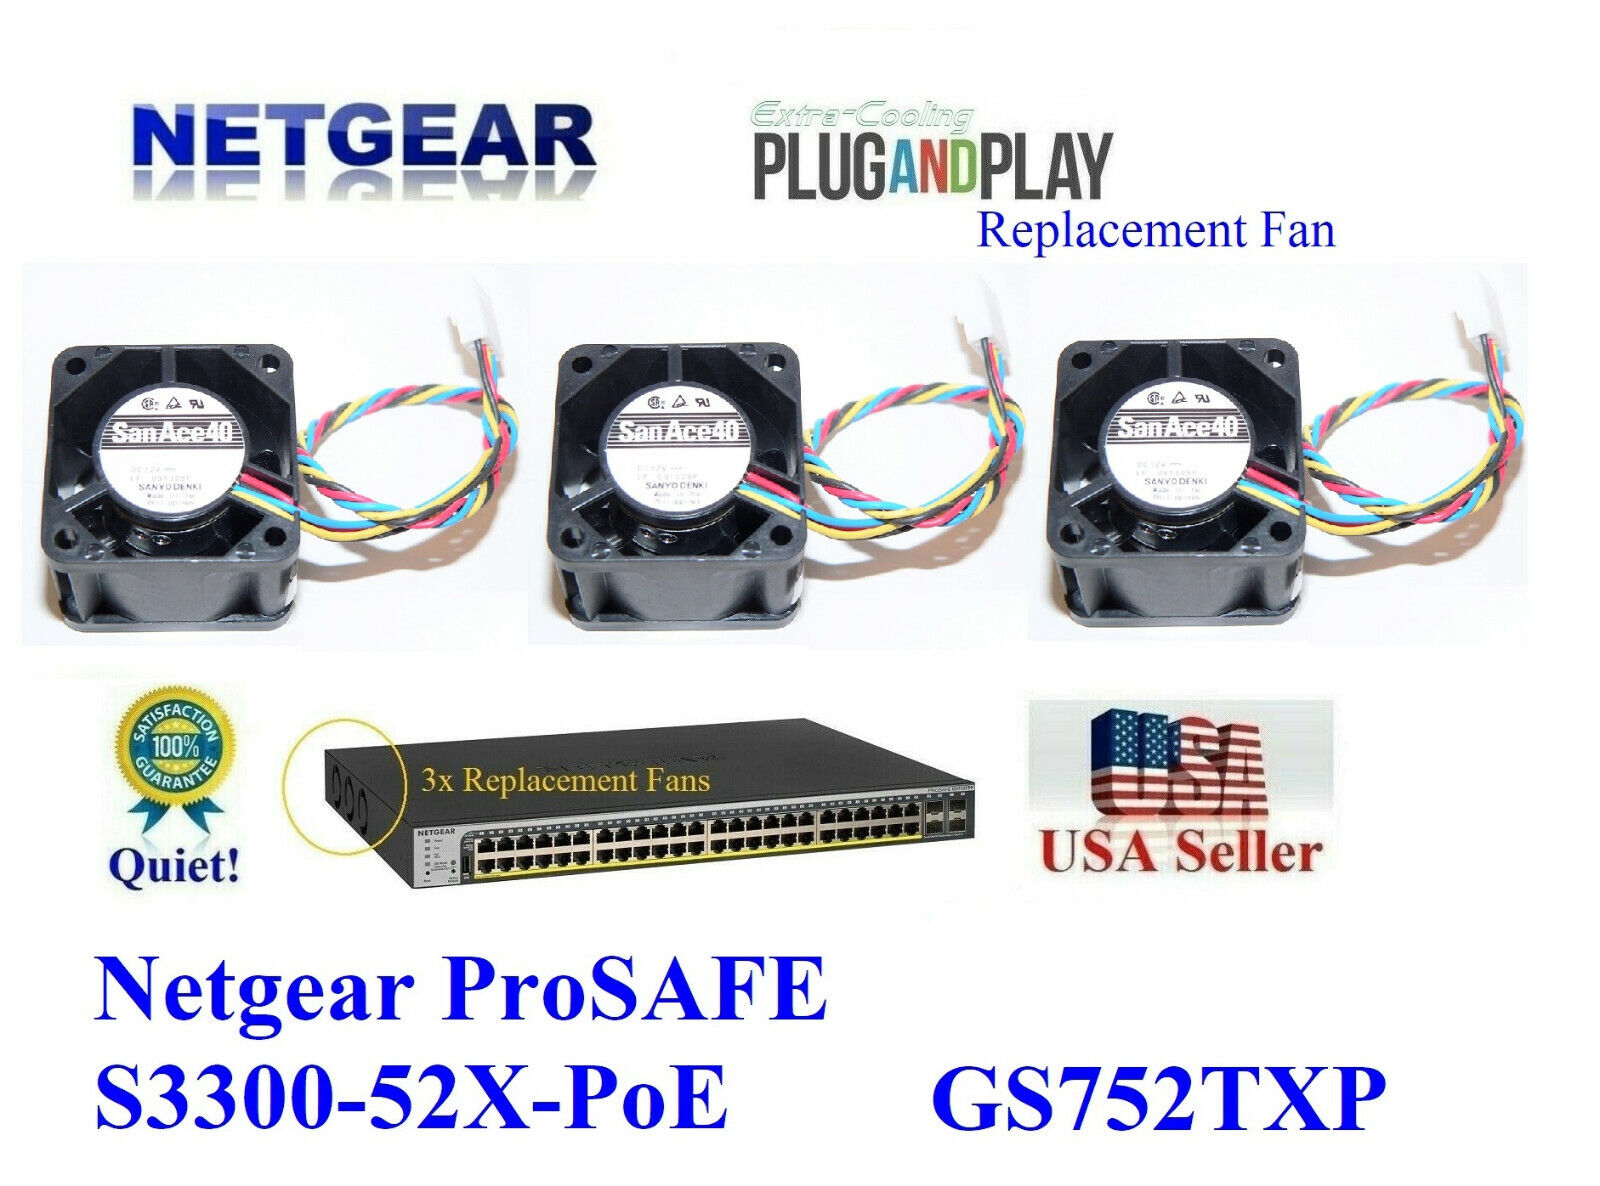 3x **Quiet** Version Replacement Fans for NETGEAR GS752TXP S3300-52X-PoE+